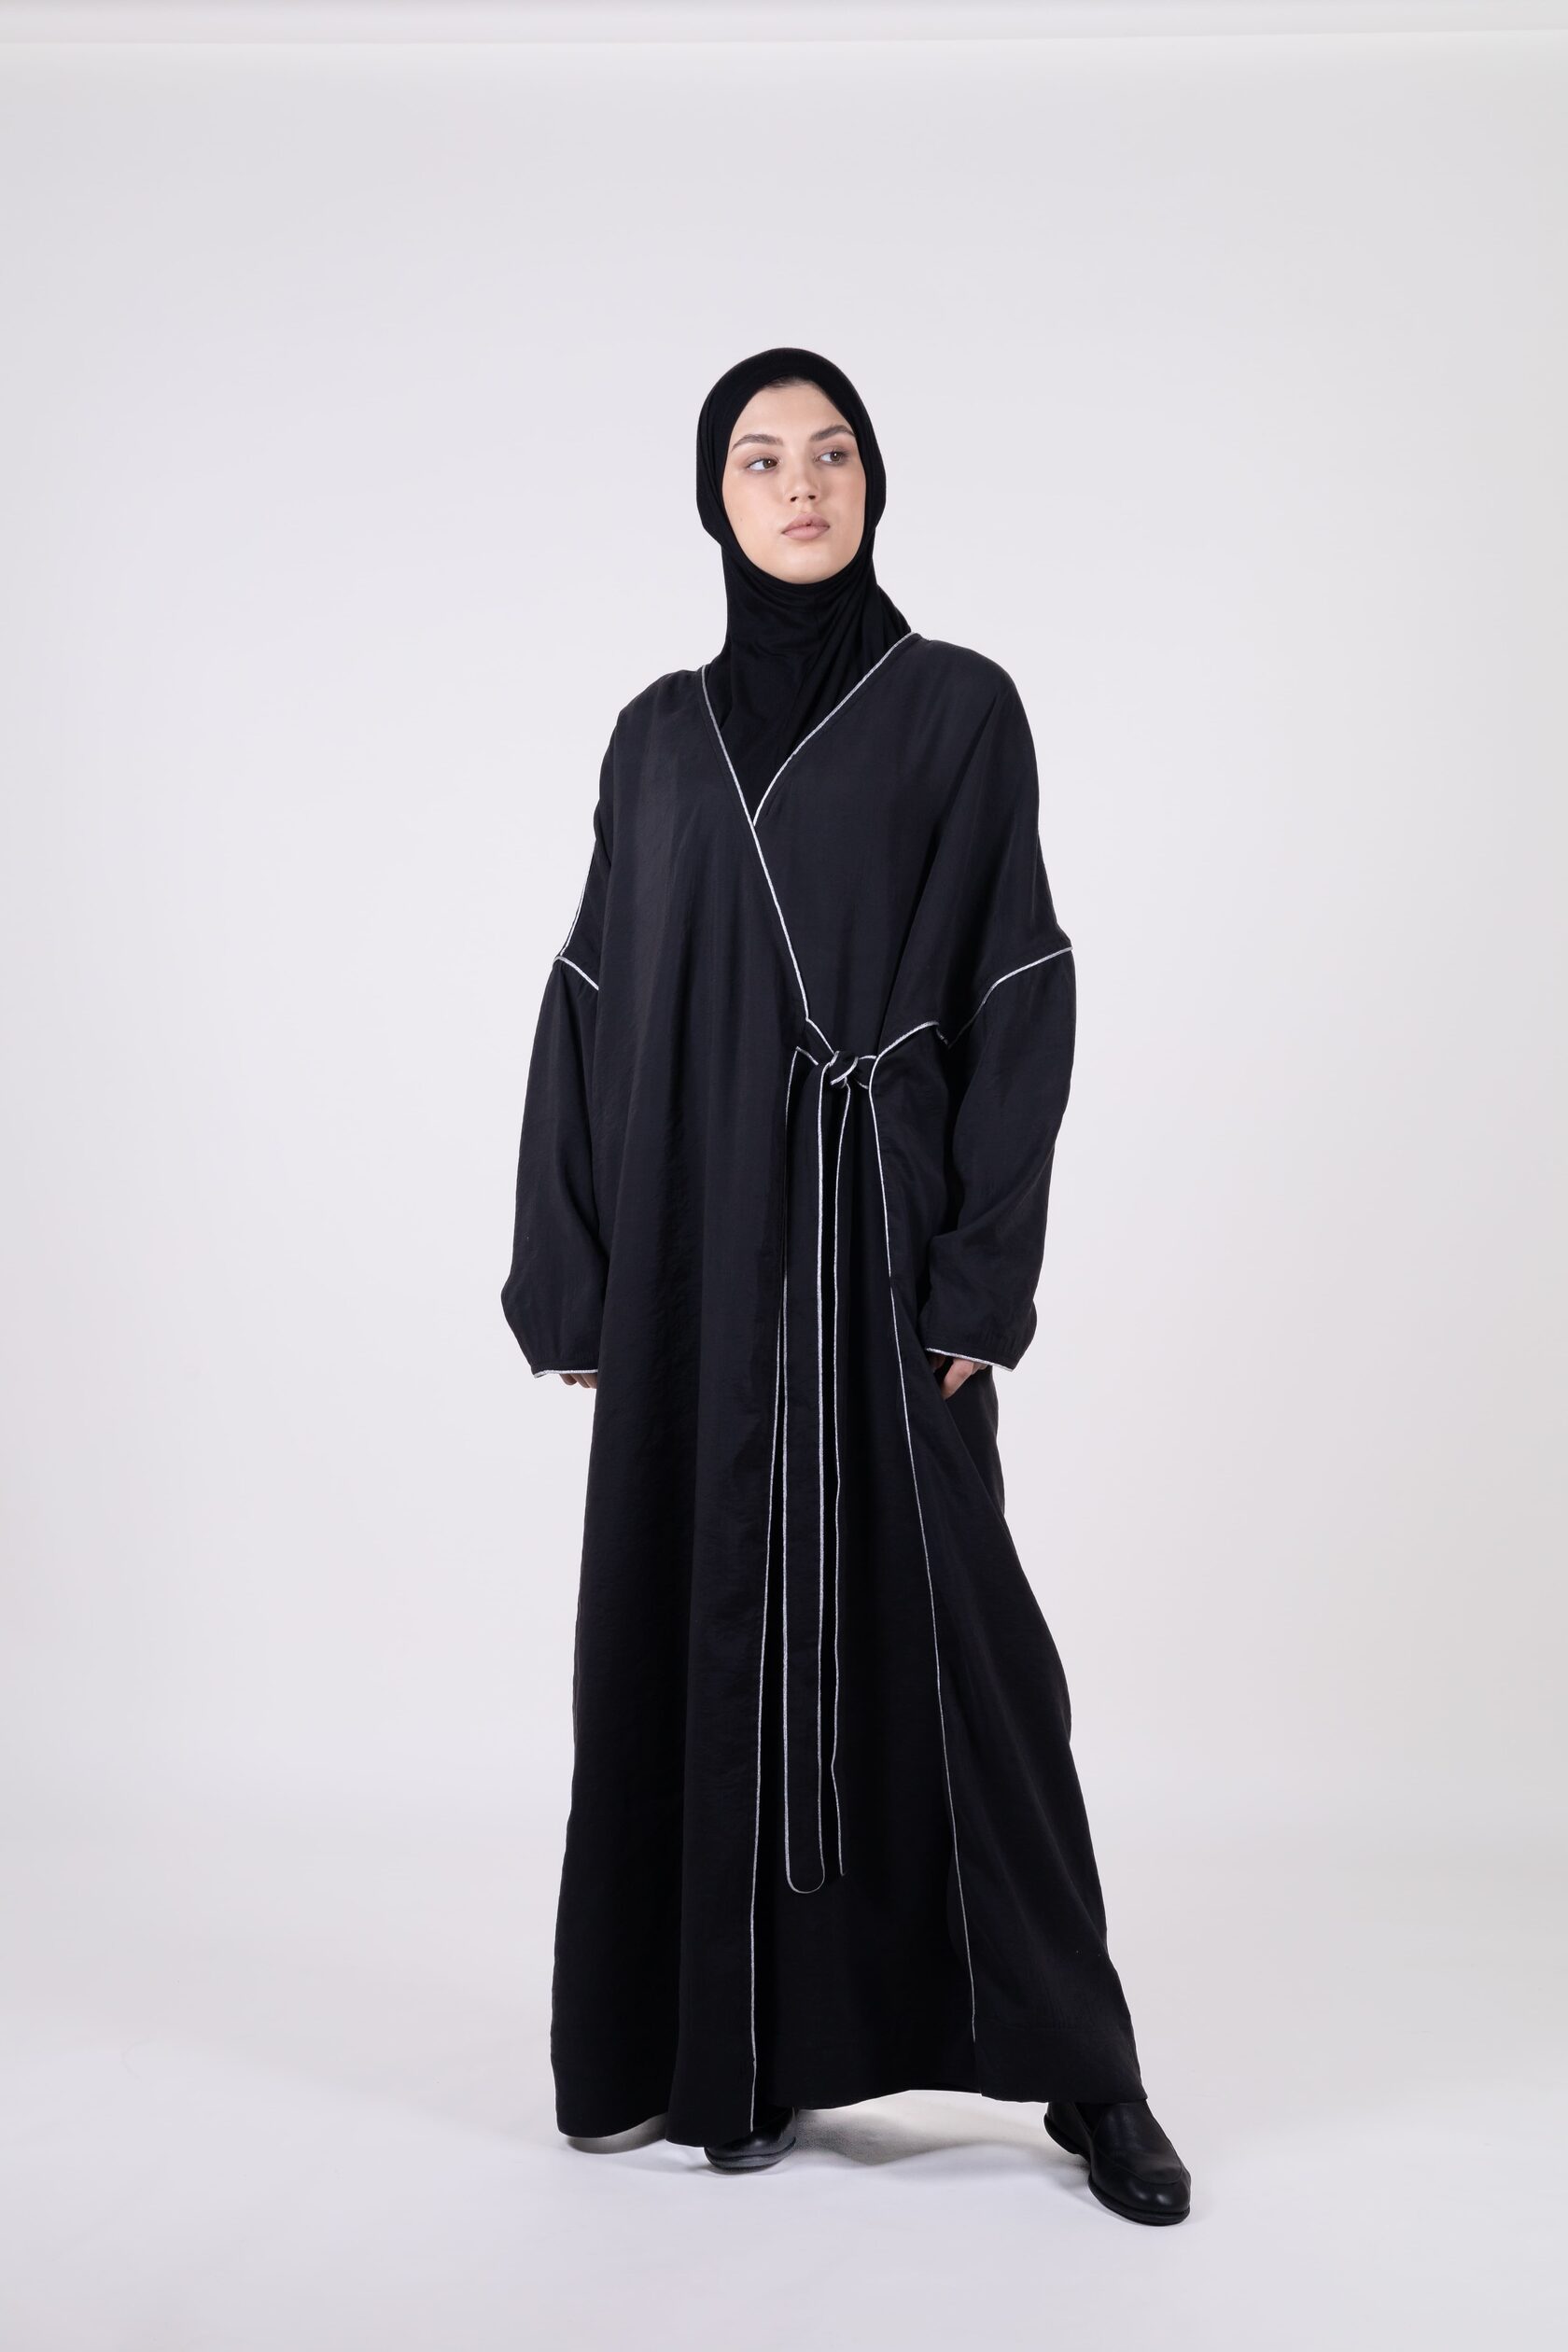 Купить исламскую женскую одежду в интернет магазине sauna-ernesto.ru